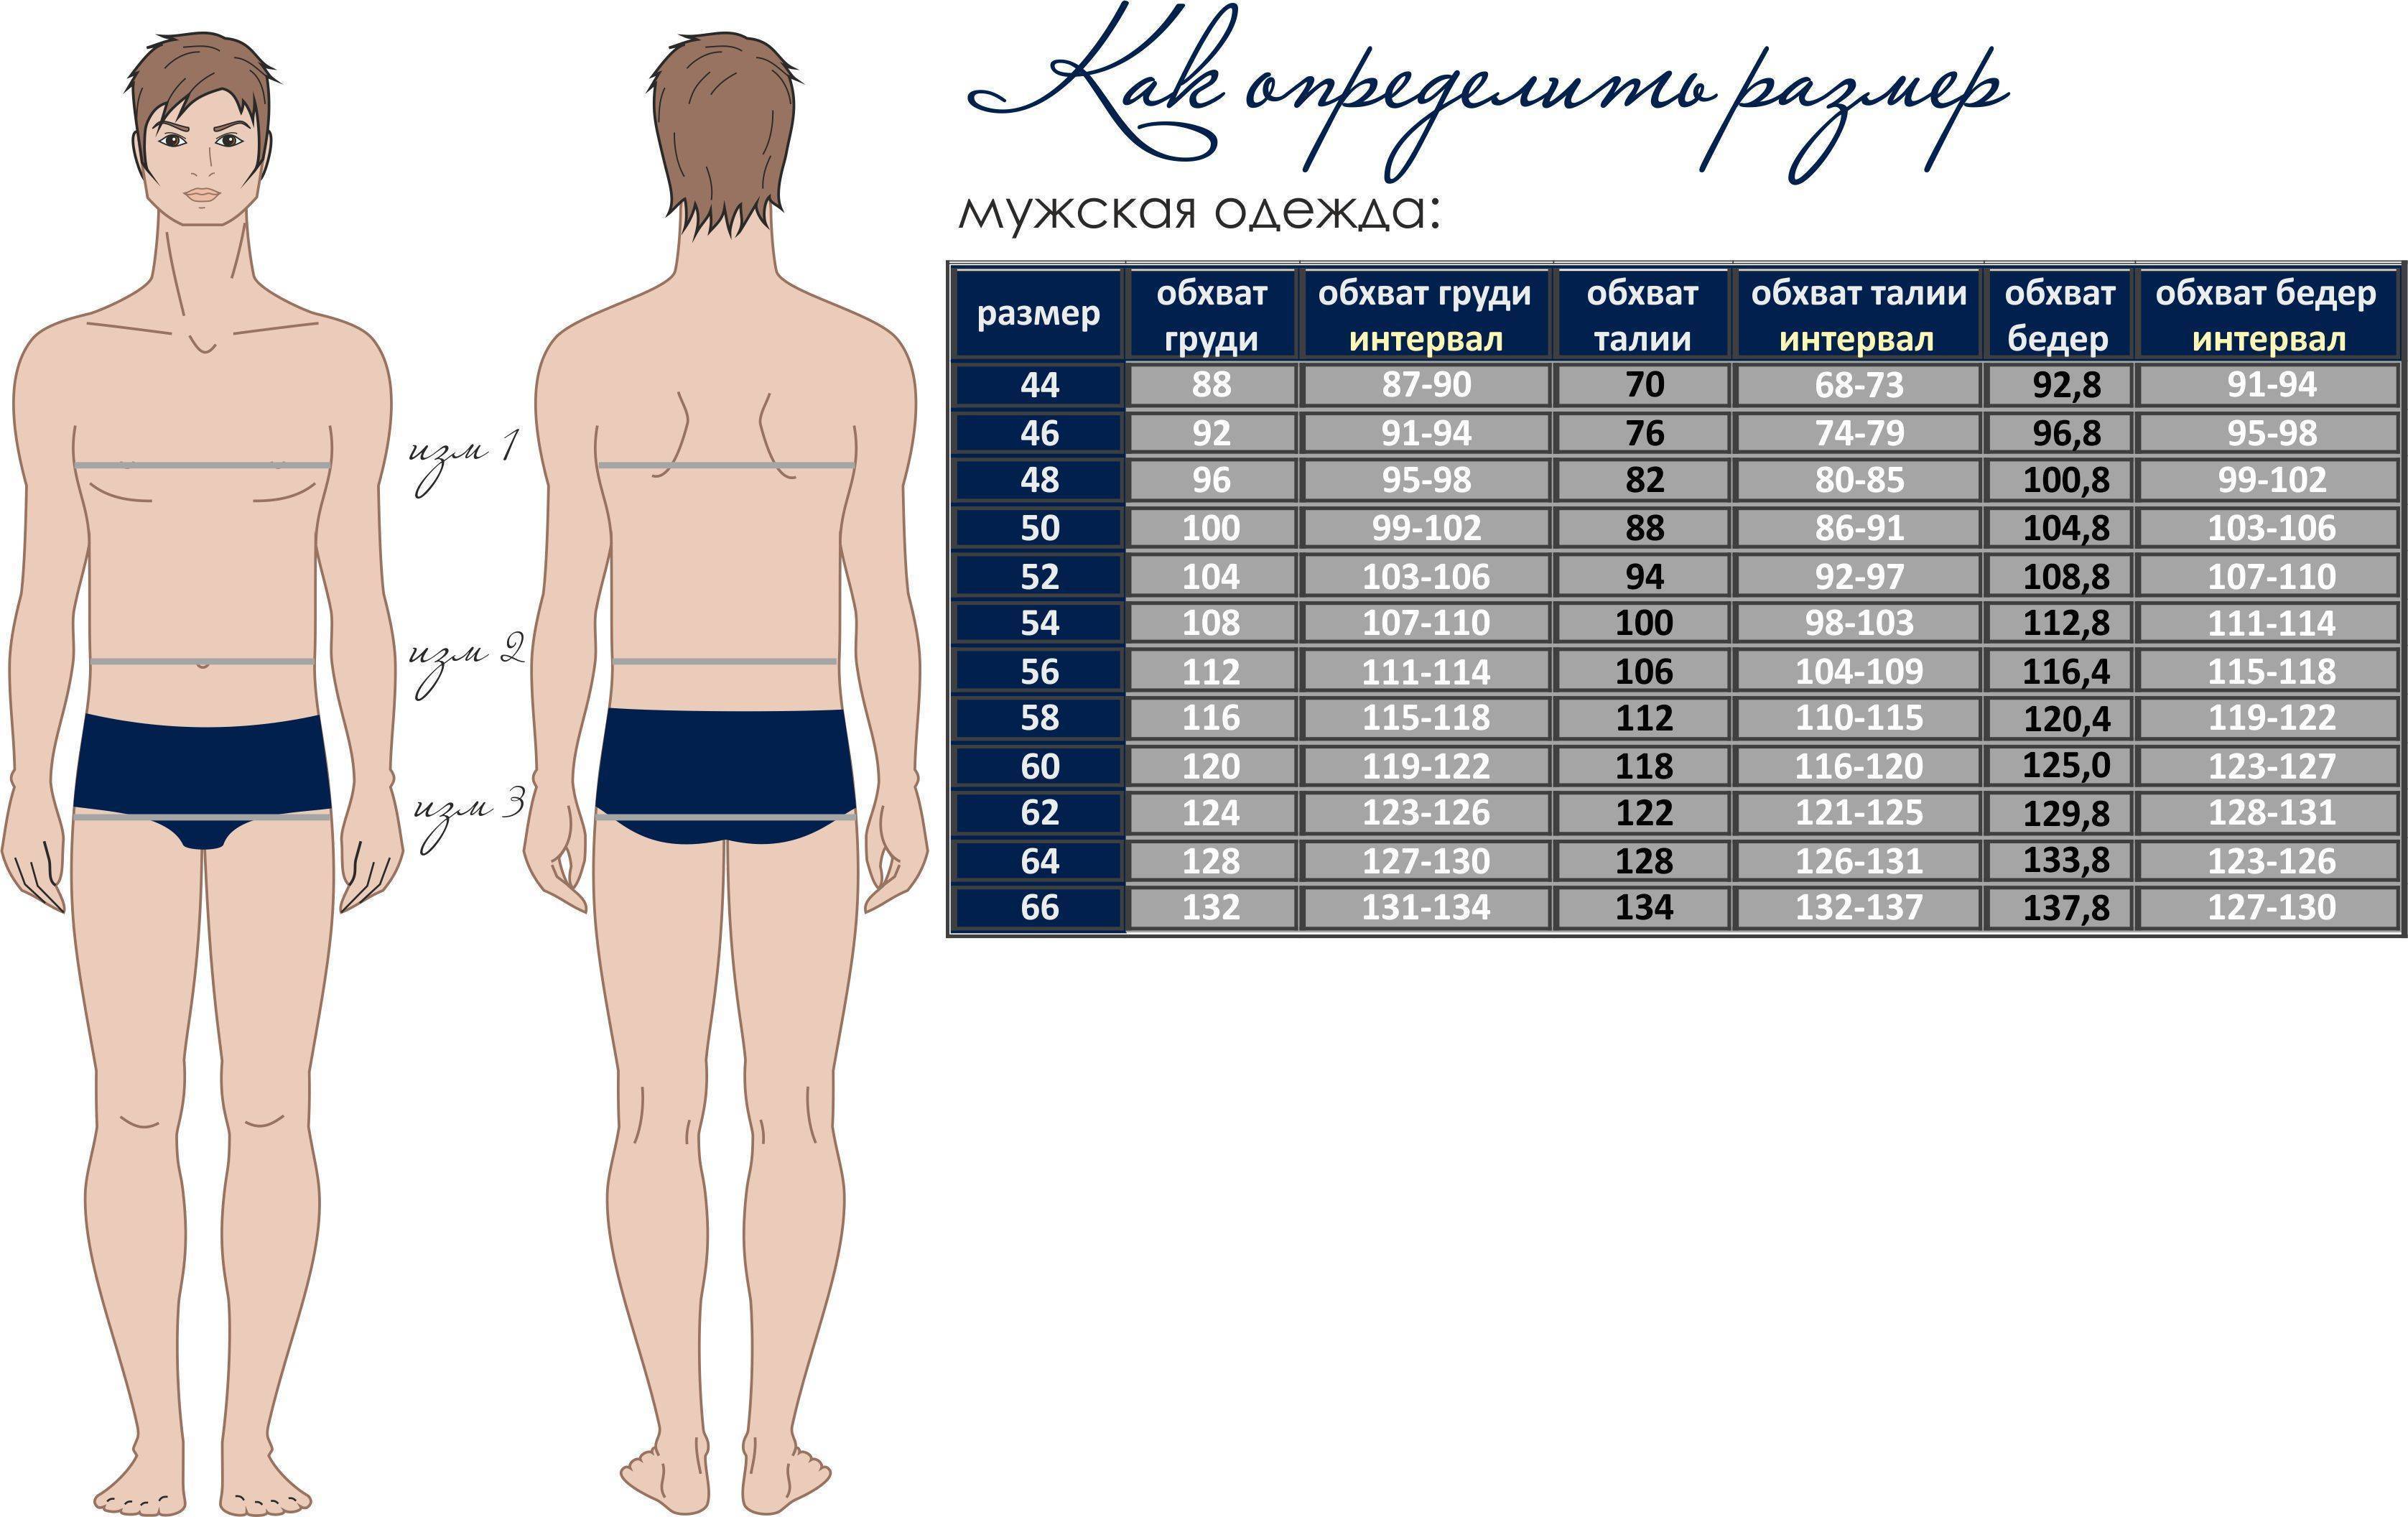 параметры груди и бедер у мужчин (120) фото